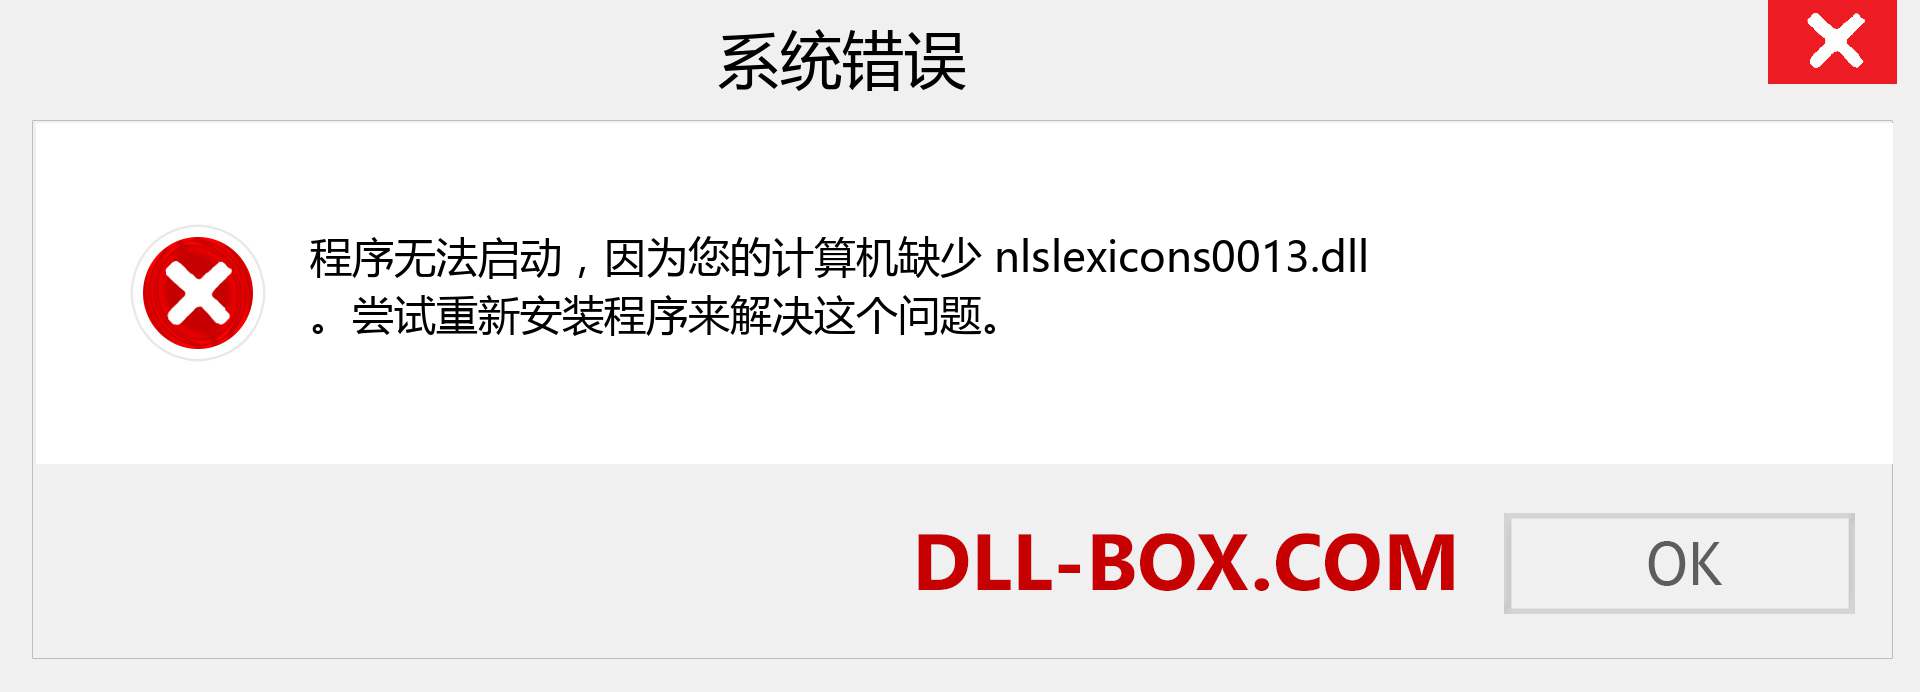 nlslexicons0013.dll 文件丢失？。 适用于 Windows 7、8、10 的下载 - 修复 Windows、照片、图像上的 nlslexicons0013 dll 丢失错误